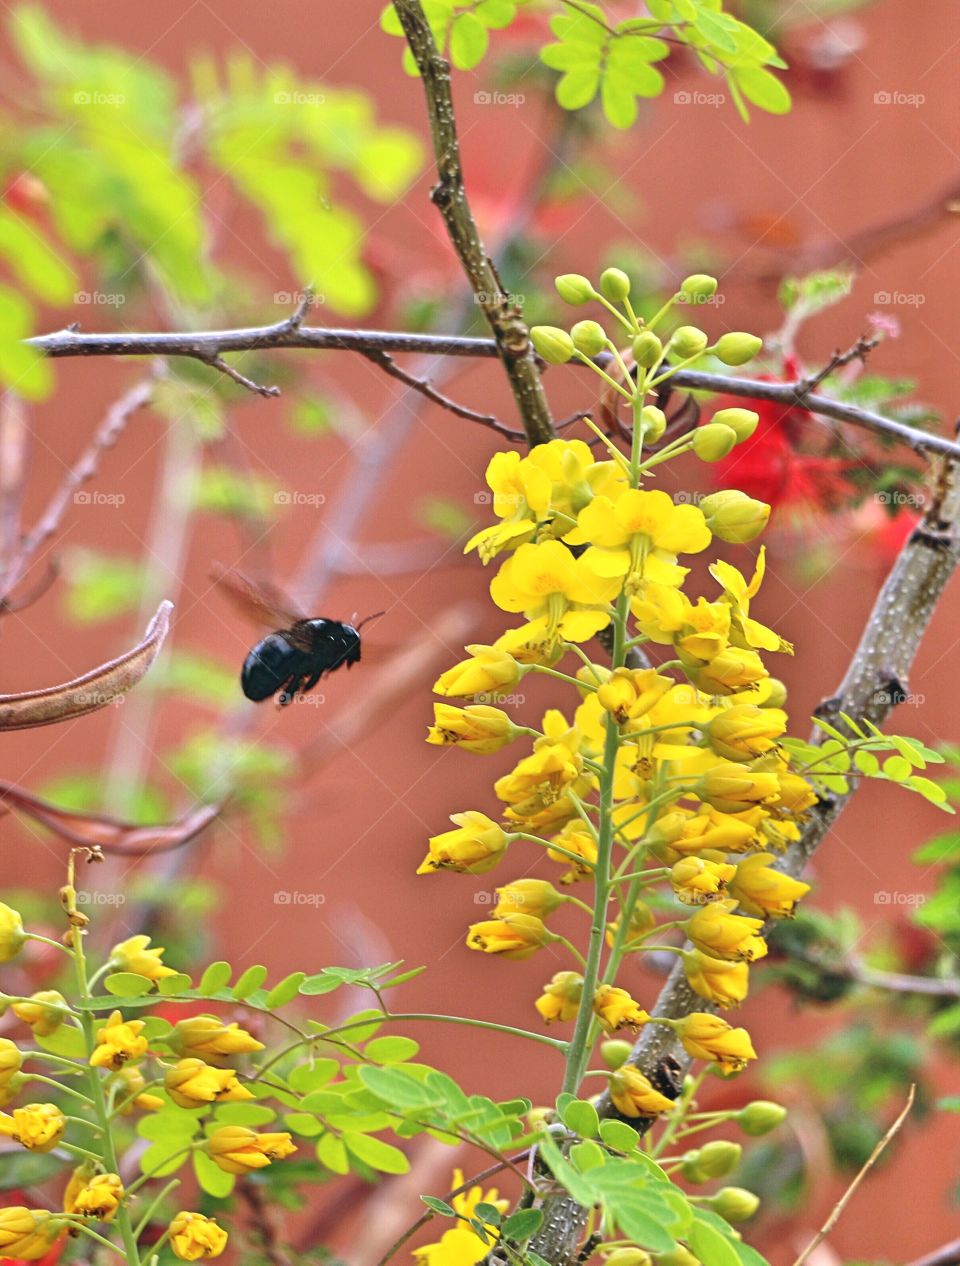 Beetle flying near flowers on branch